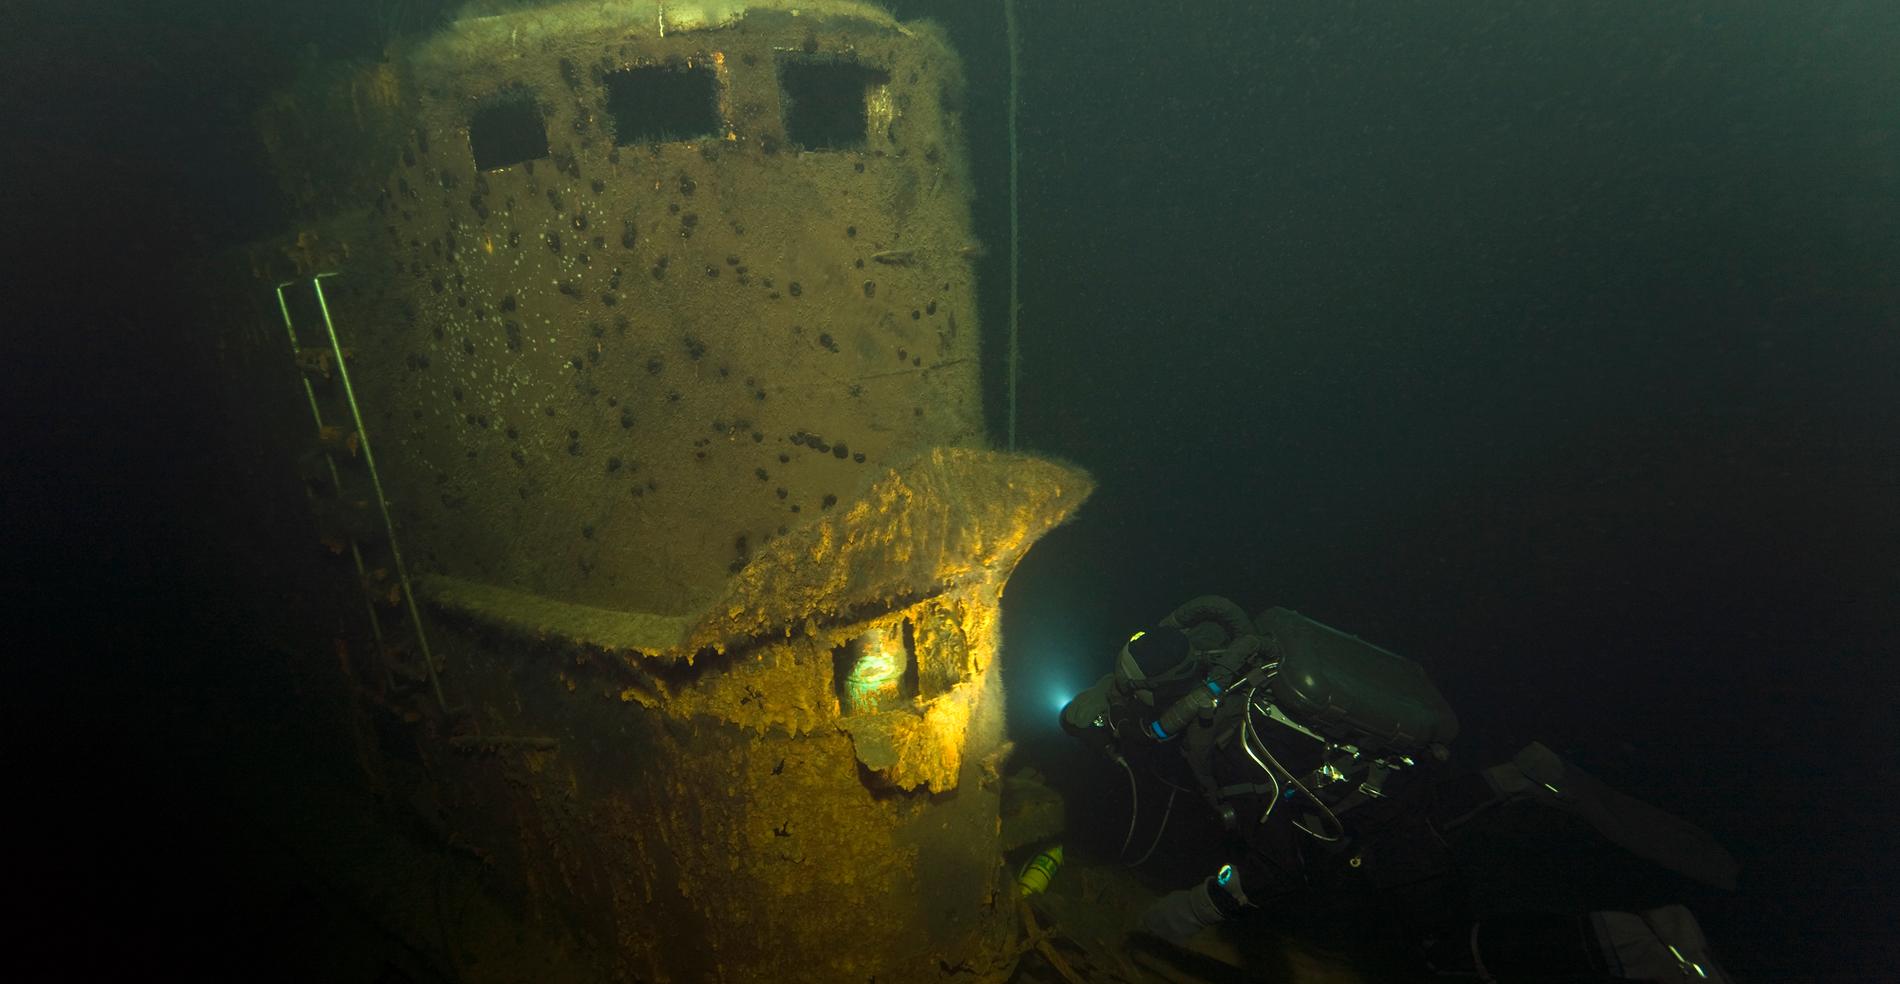 Mysteriet på botten Ubåten hittades av civila dykare på 60 meters djup söder om Gotland. Om den har sänkts i samband med ubåtsjakt på svenskt territorium skulle fyndet vara sensationellt – men det avfärdar militären.